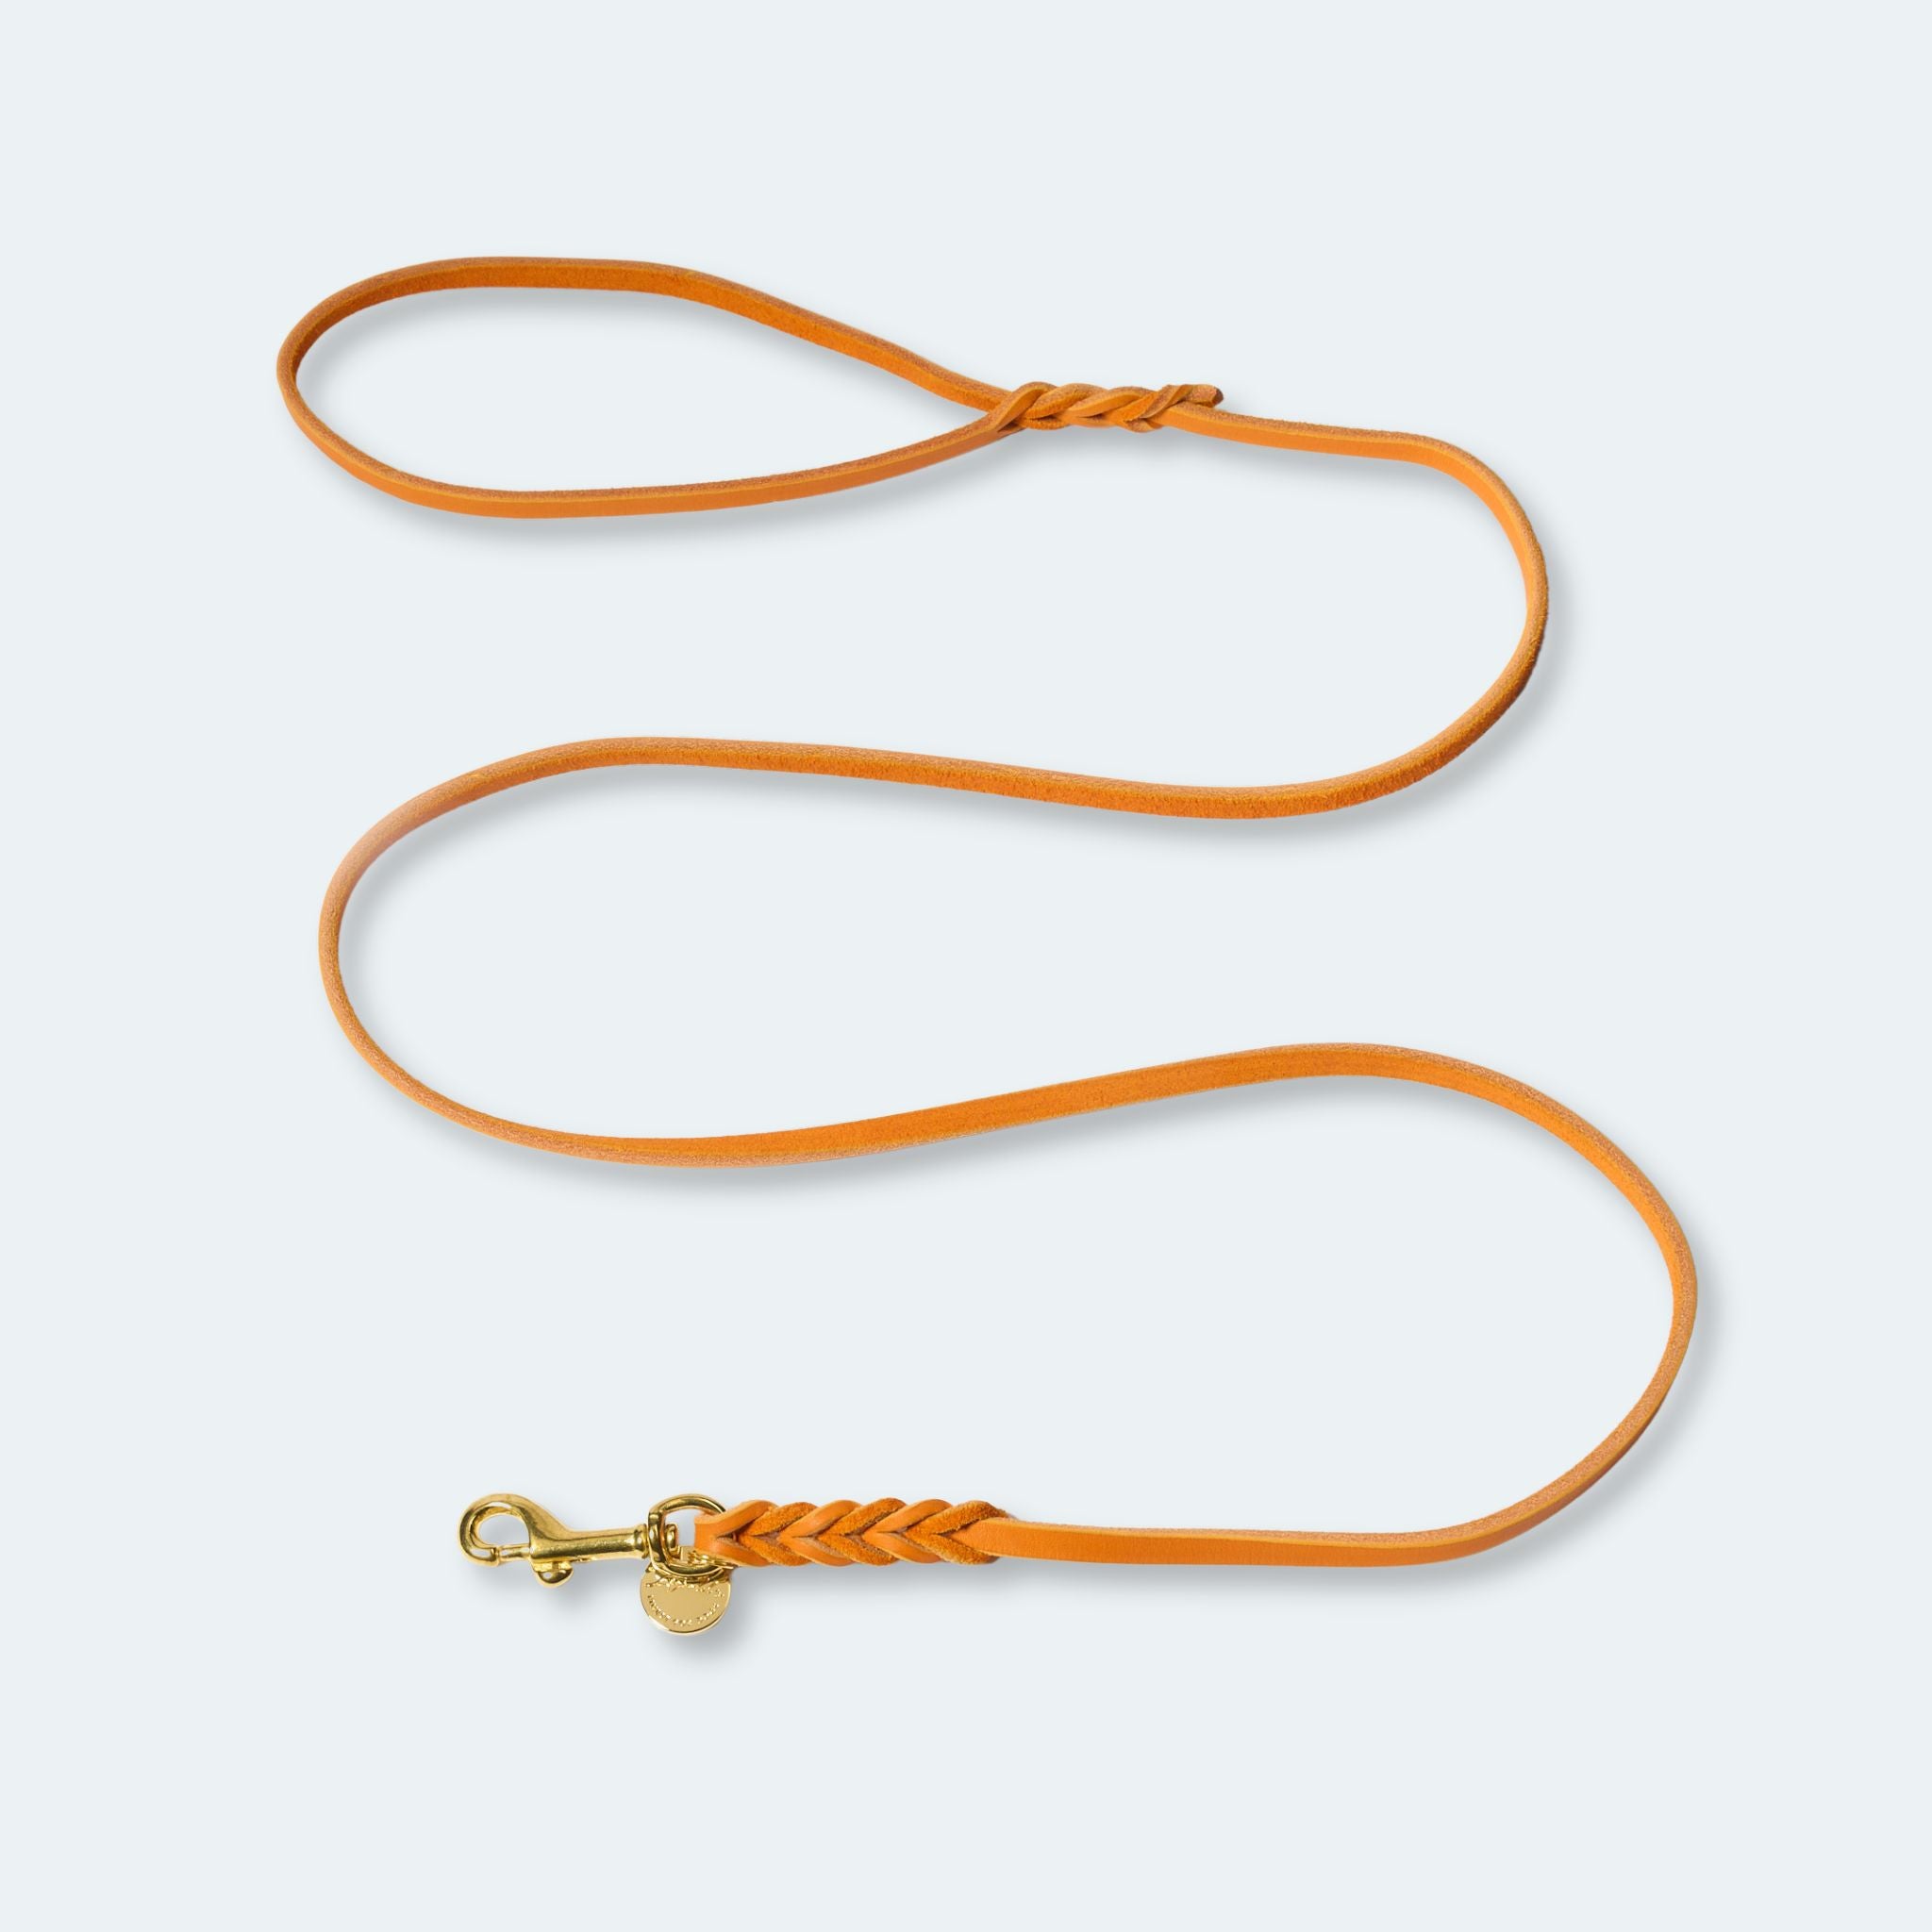 Leichte Hundeleine Fettleder Orange Gold - von Leopold's kaufen bei leopolds-finest [Orange-Gold]